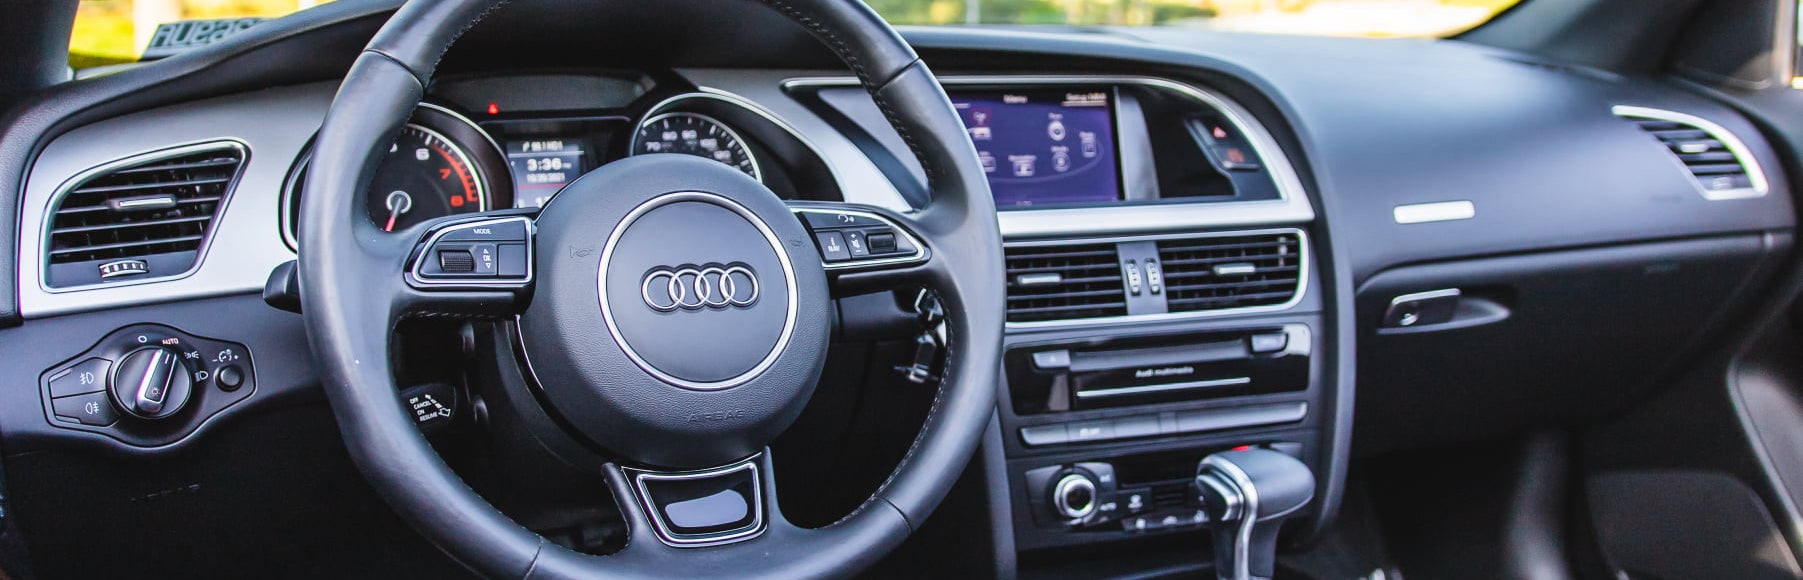 Audi interior cockpit